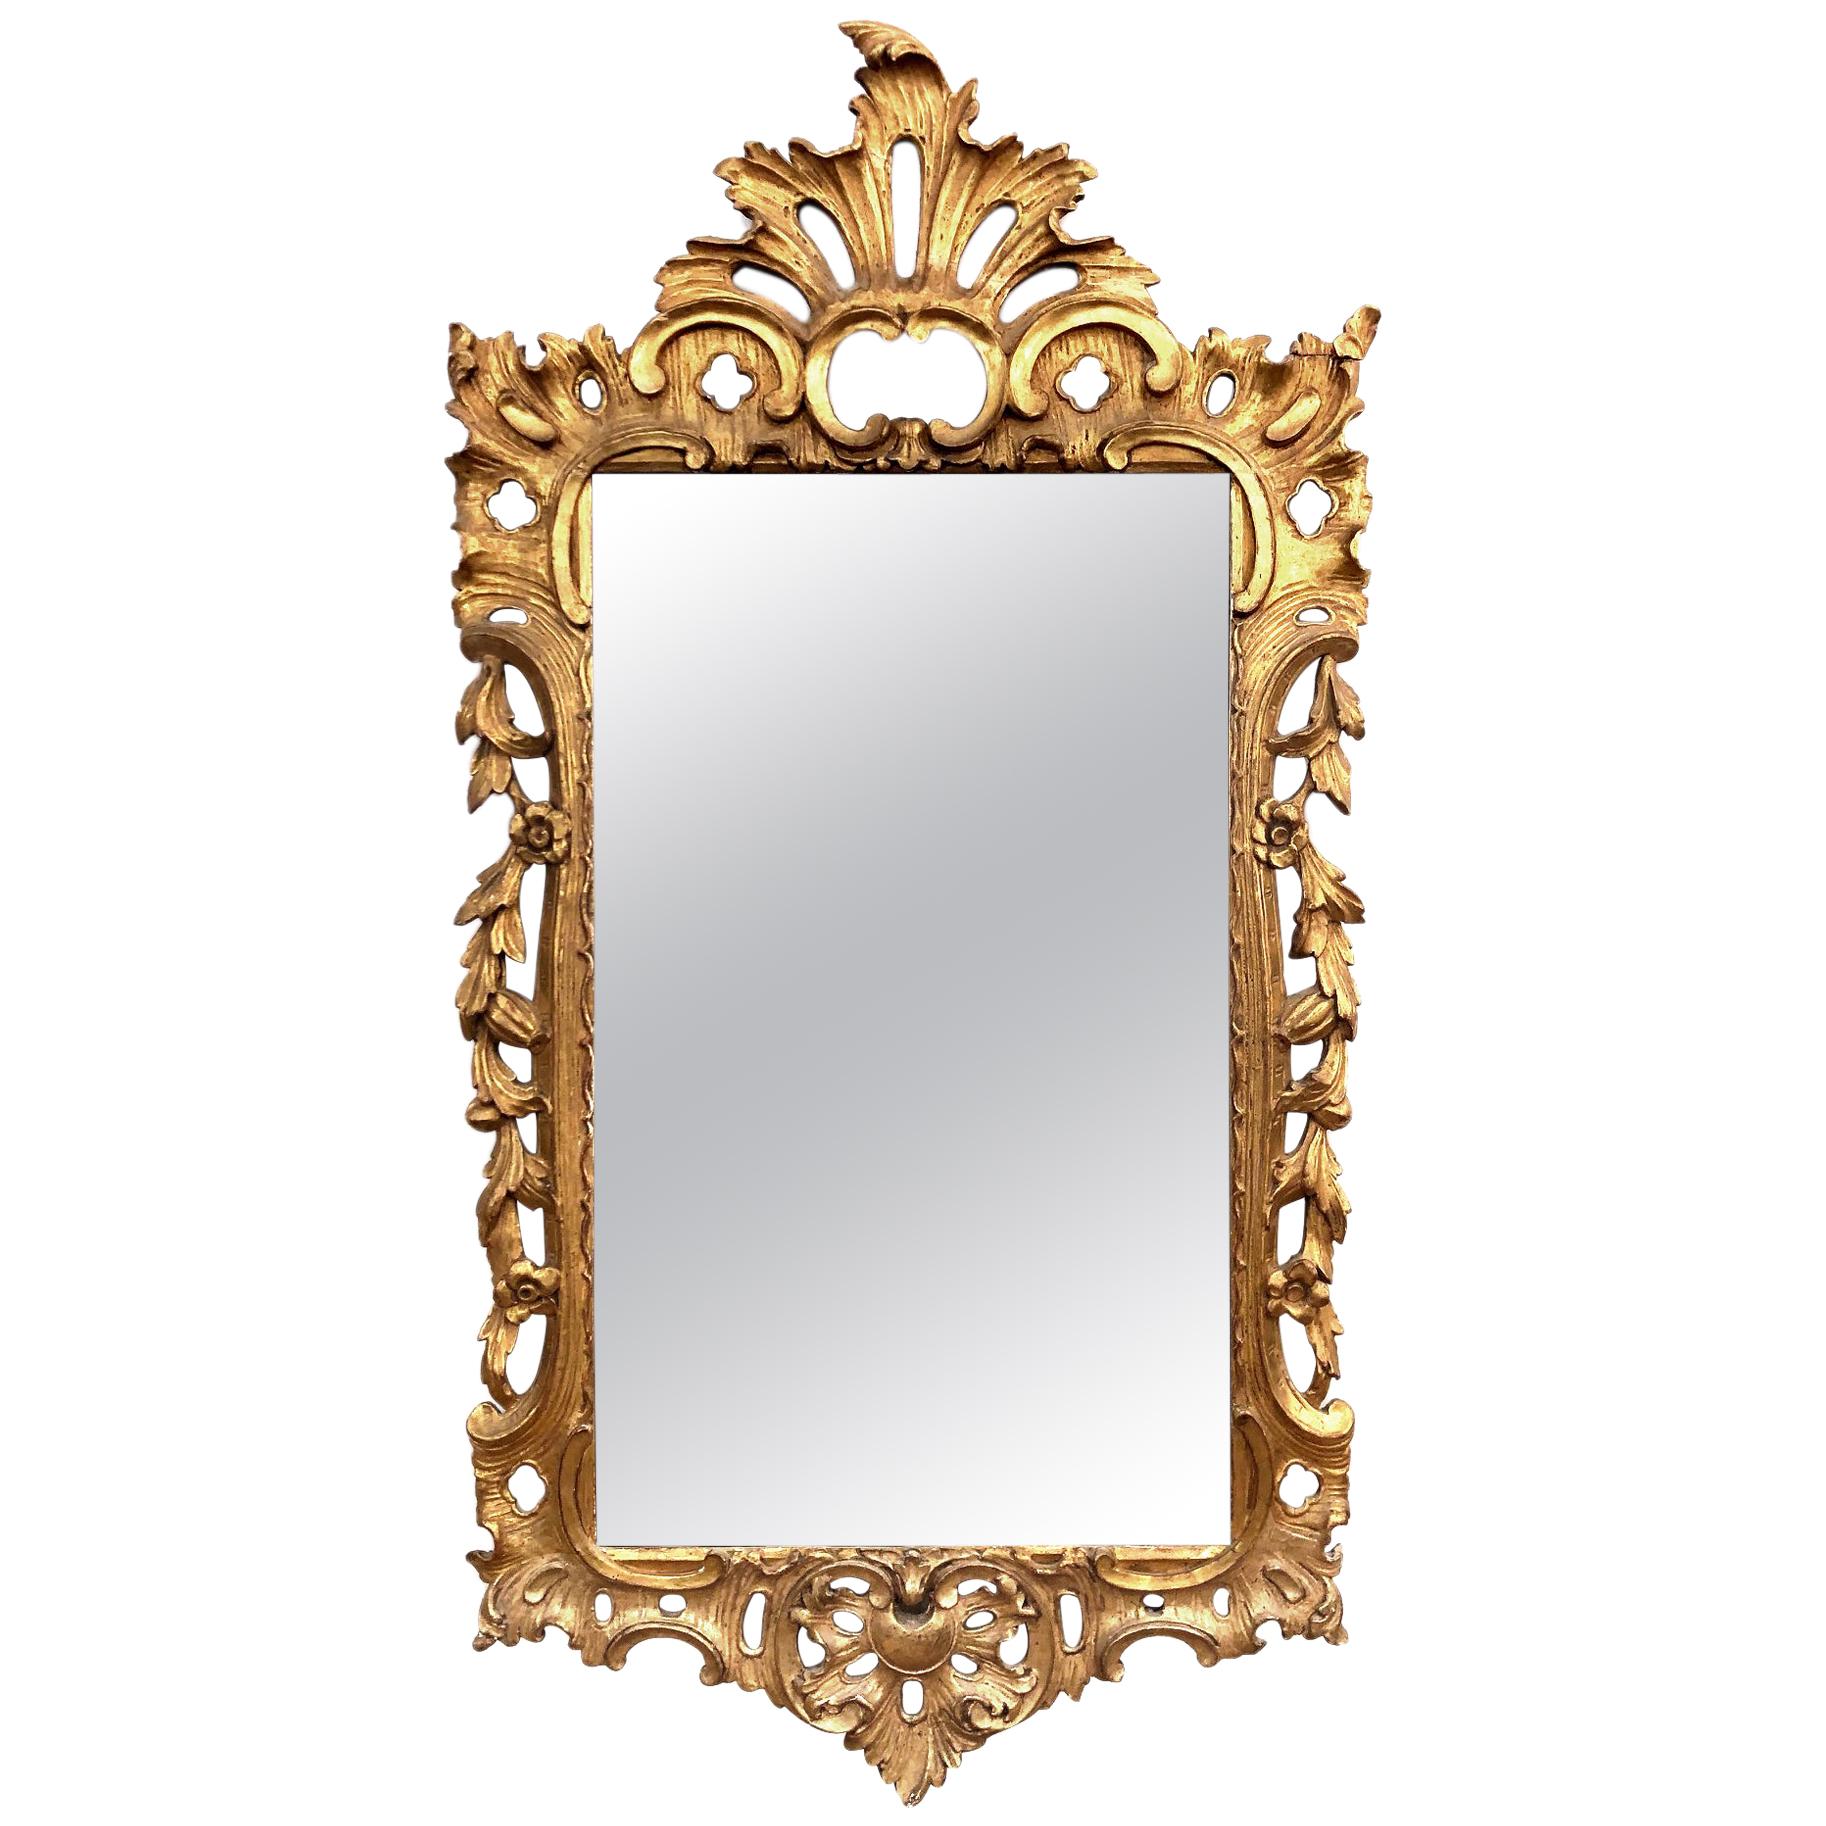 Miroir en bois doré sculpté de style rococo français